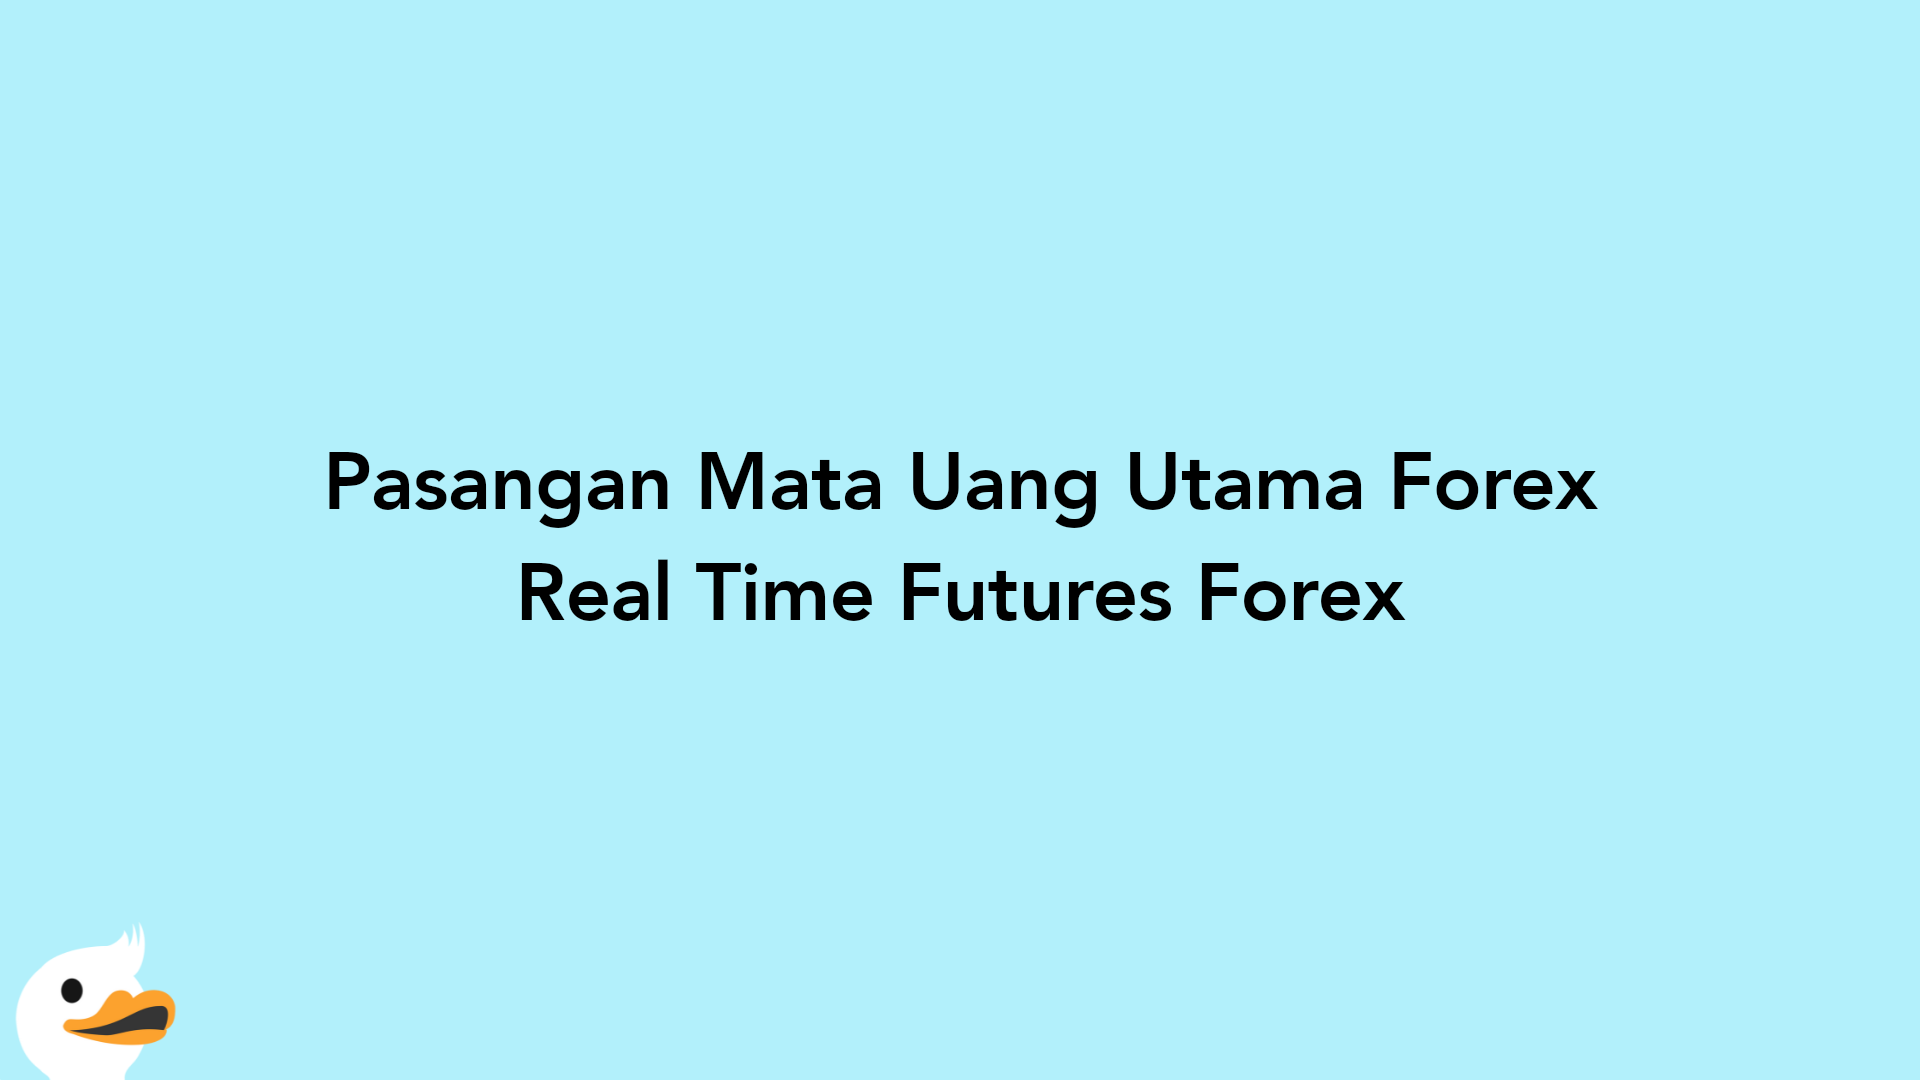 Pasangan Mata Uang Utama Forex Real Time Futures Forex